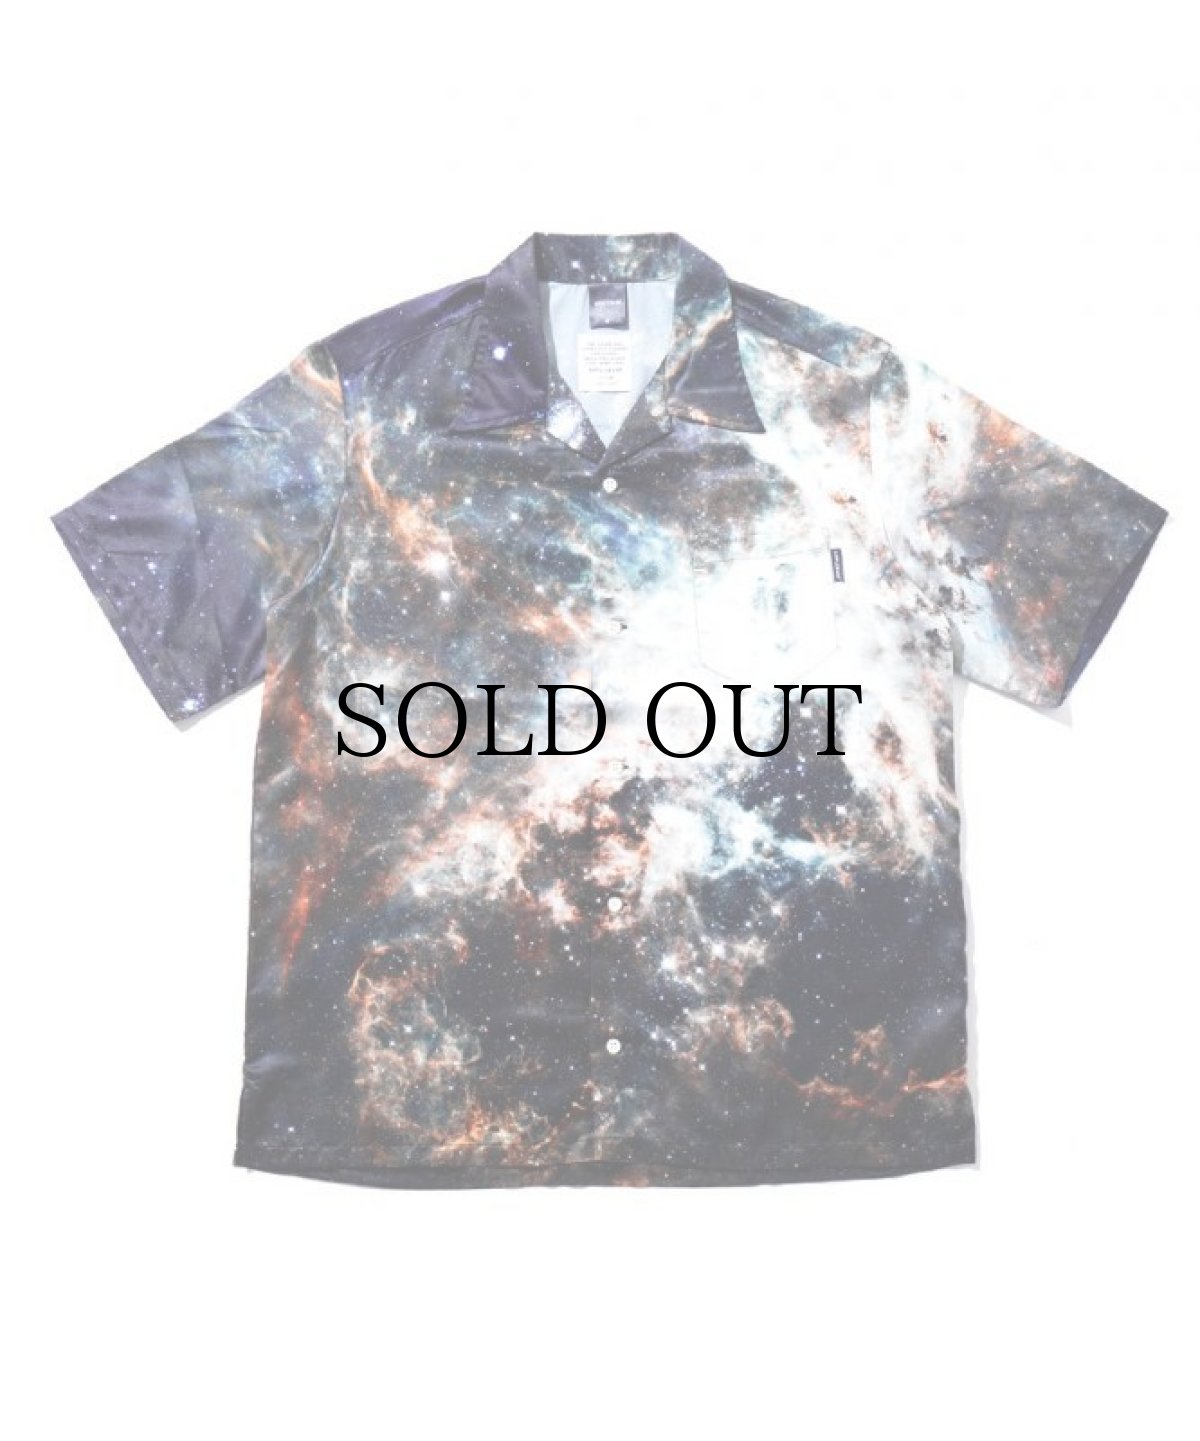 画像1: APPLEBUM / "Nebula" S/S Aloha Shirt (1)